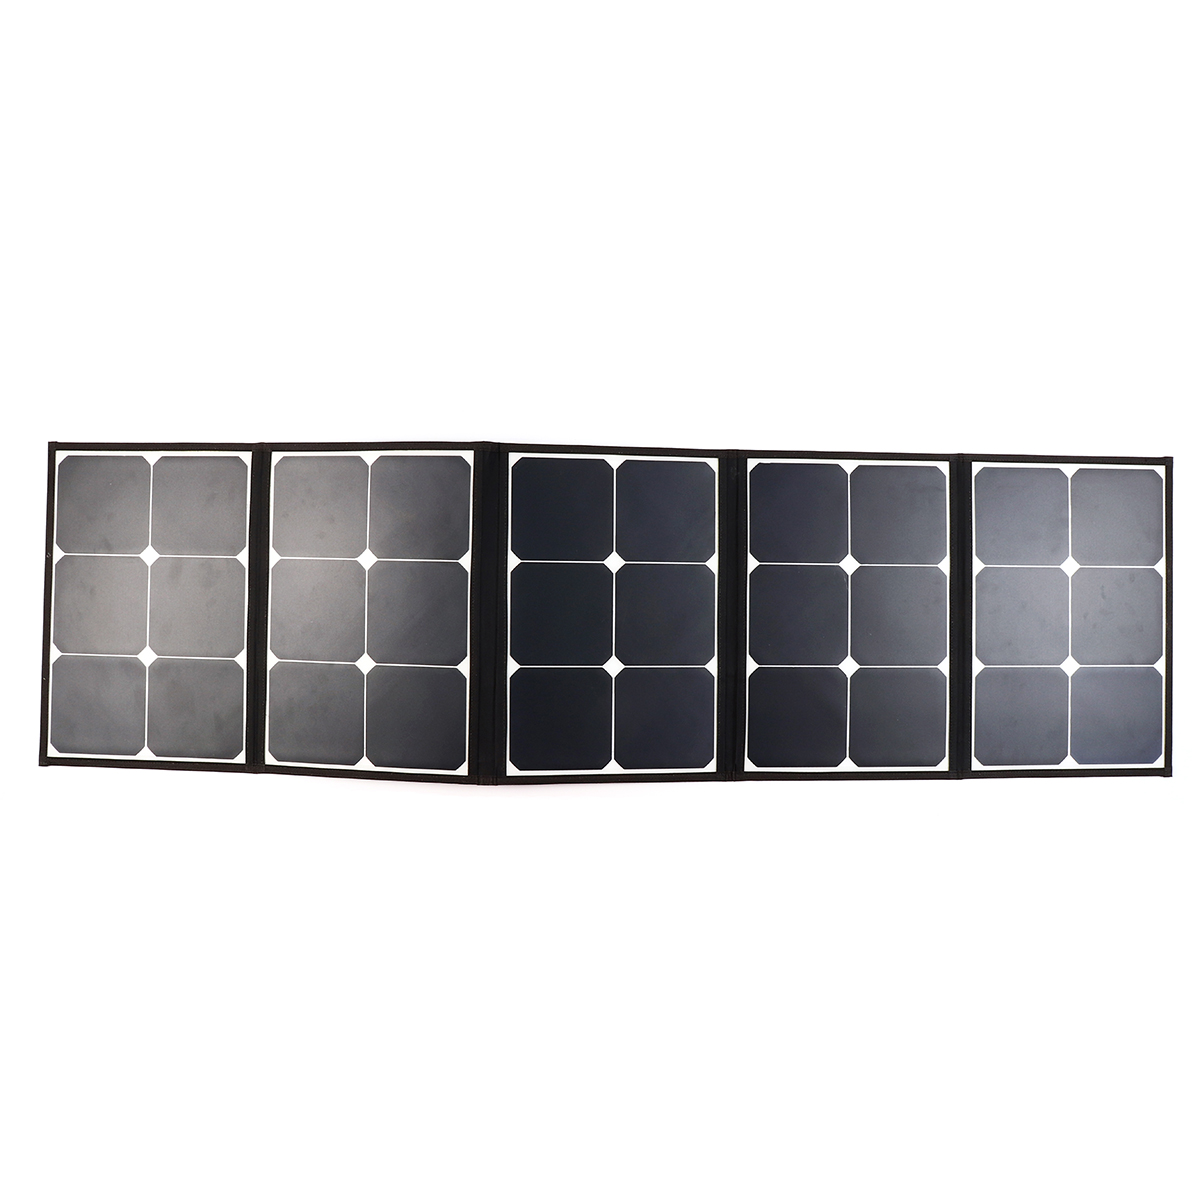 Sunpower-Solar-Folding-Bag-With-laptop-Connector-10PCS-DC-Charging-Line-1PCS-Car-charger-1PCS-Batter-1525145-5